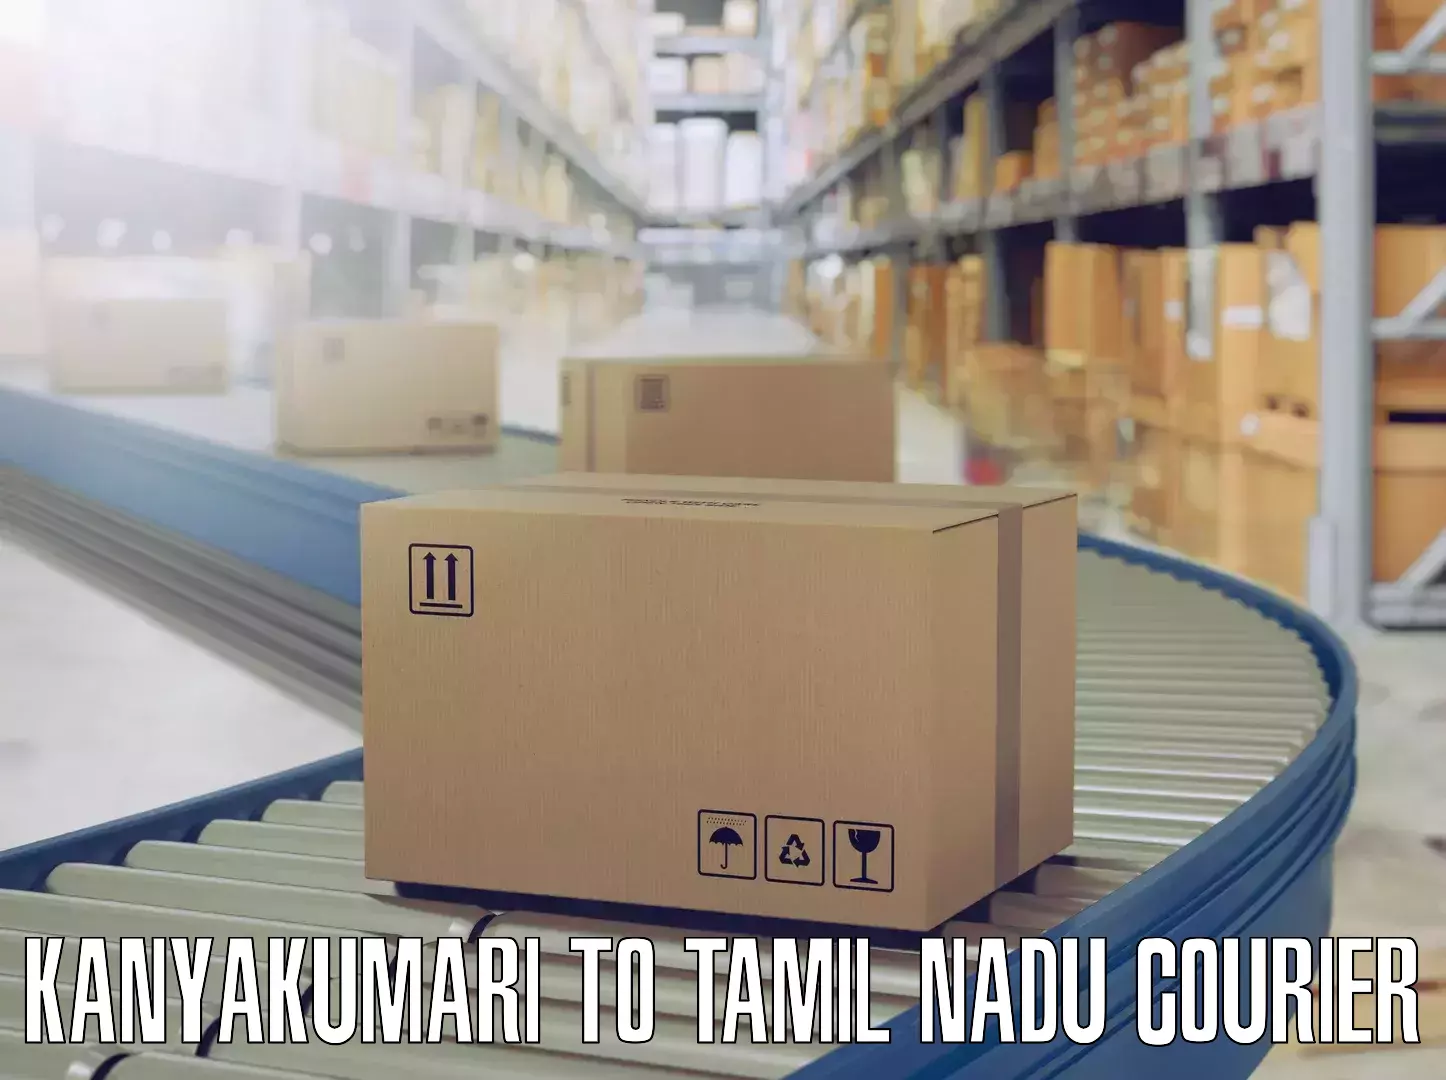 Budget-friendly moving services Kanyakumari to Tamil Nadu